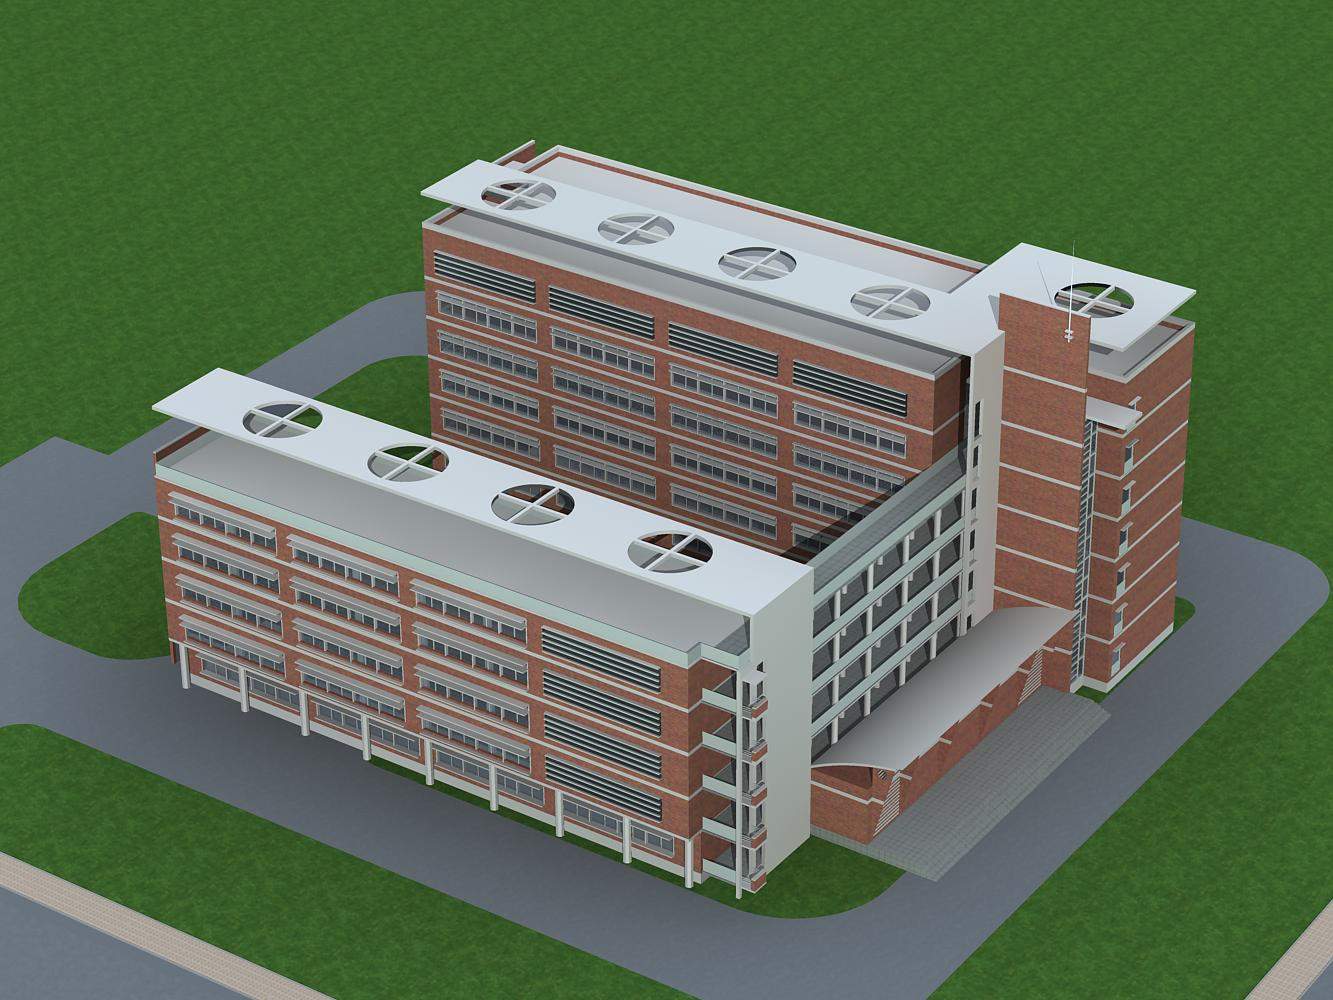 某中心小学教学综合楼 已竣工投入使用-福建筑仁工程设计事务所